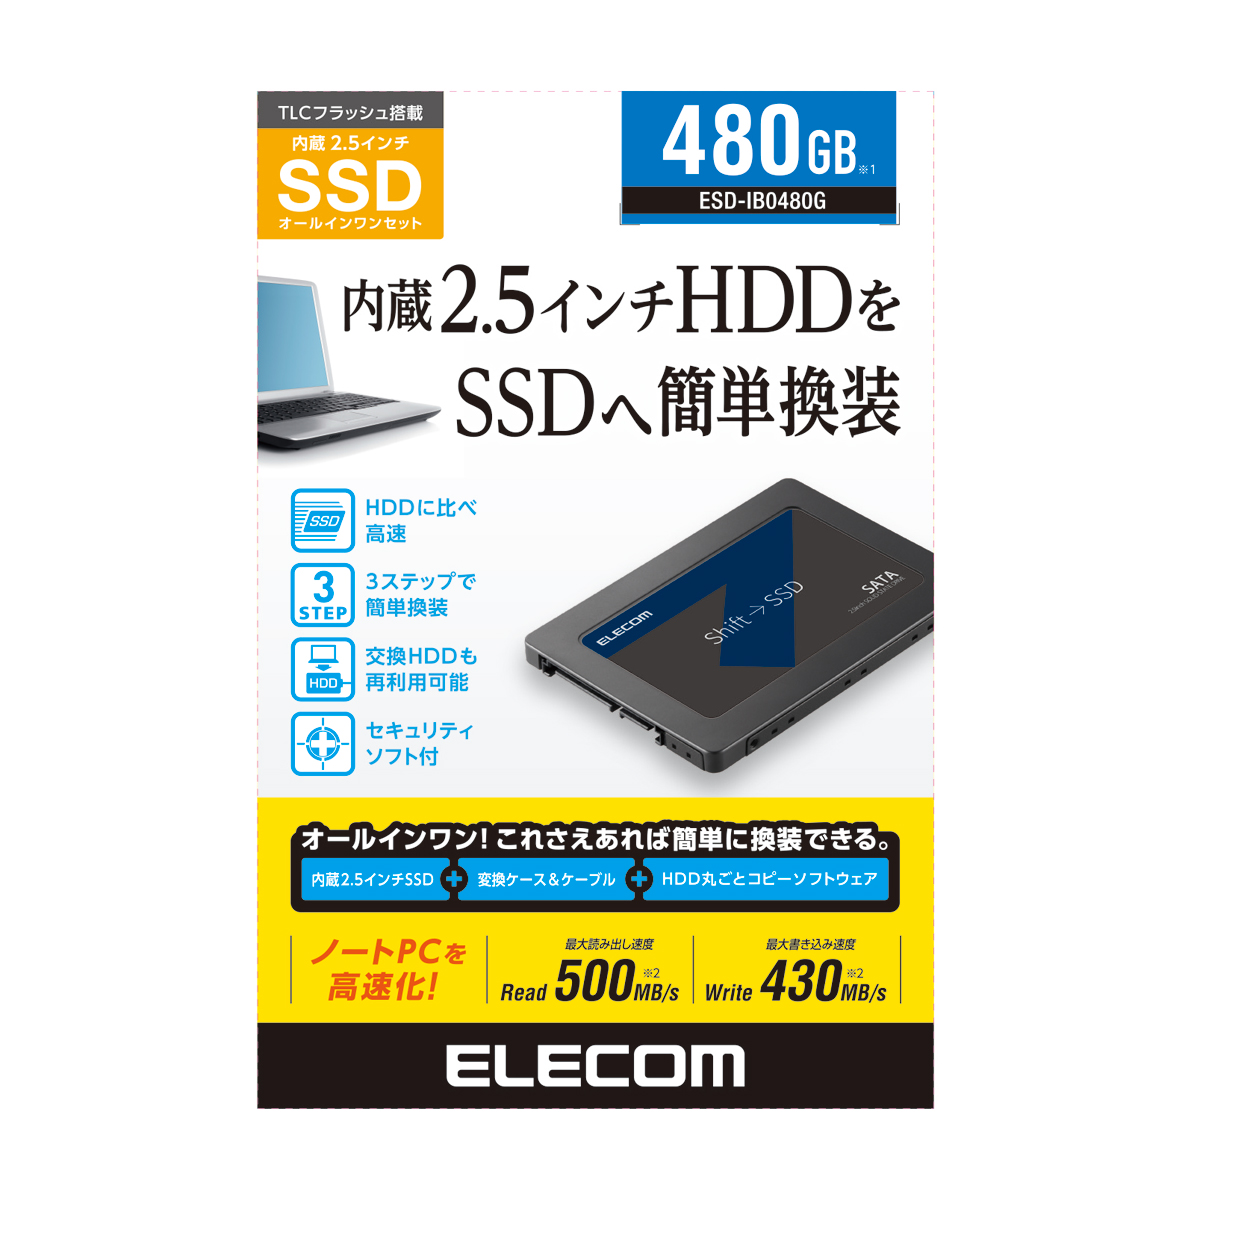 2.5インチ SerialATA接続内蔵SSD | エレコムダイレクトショップ本店は